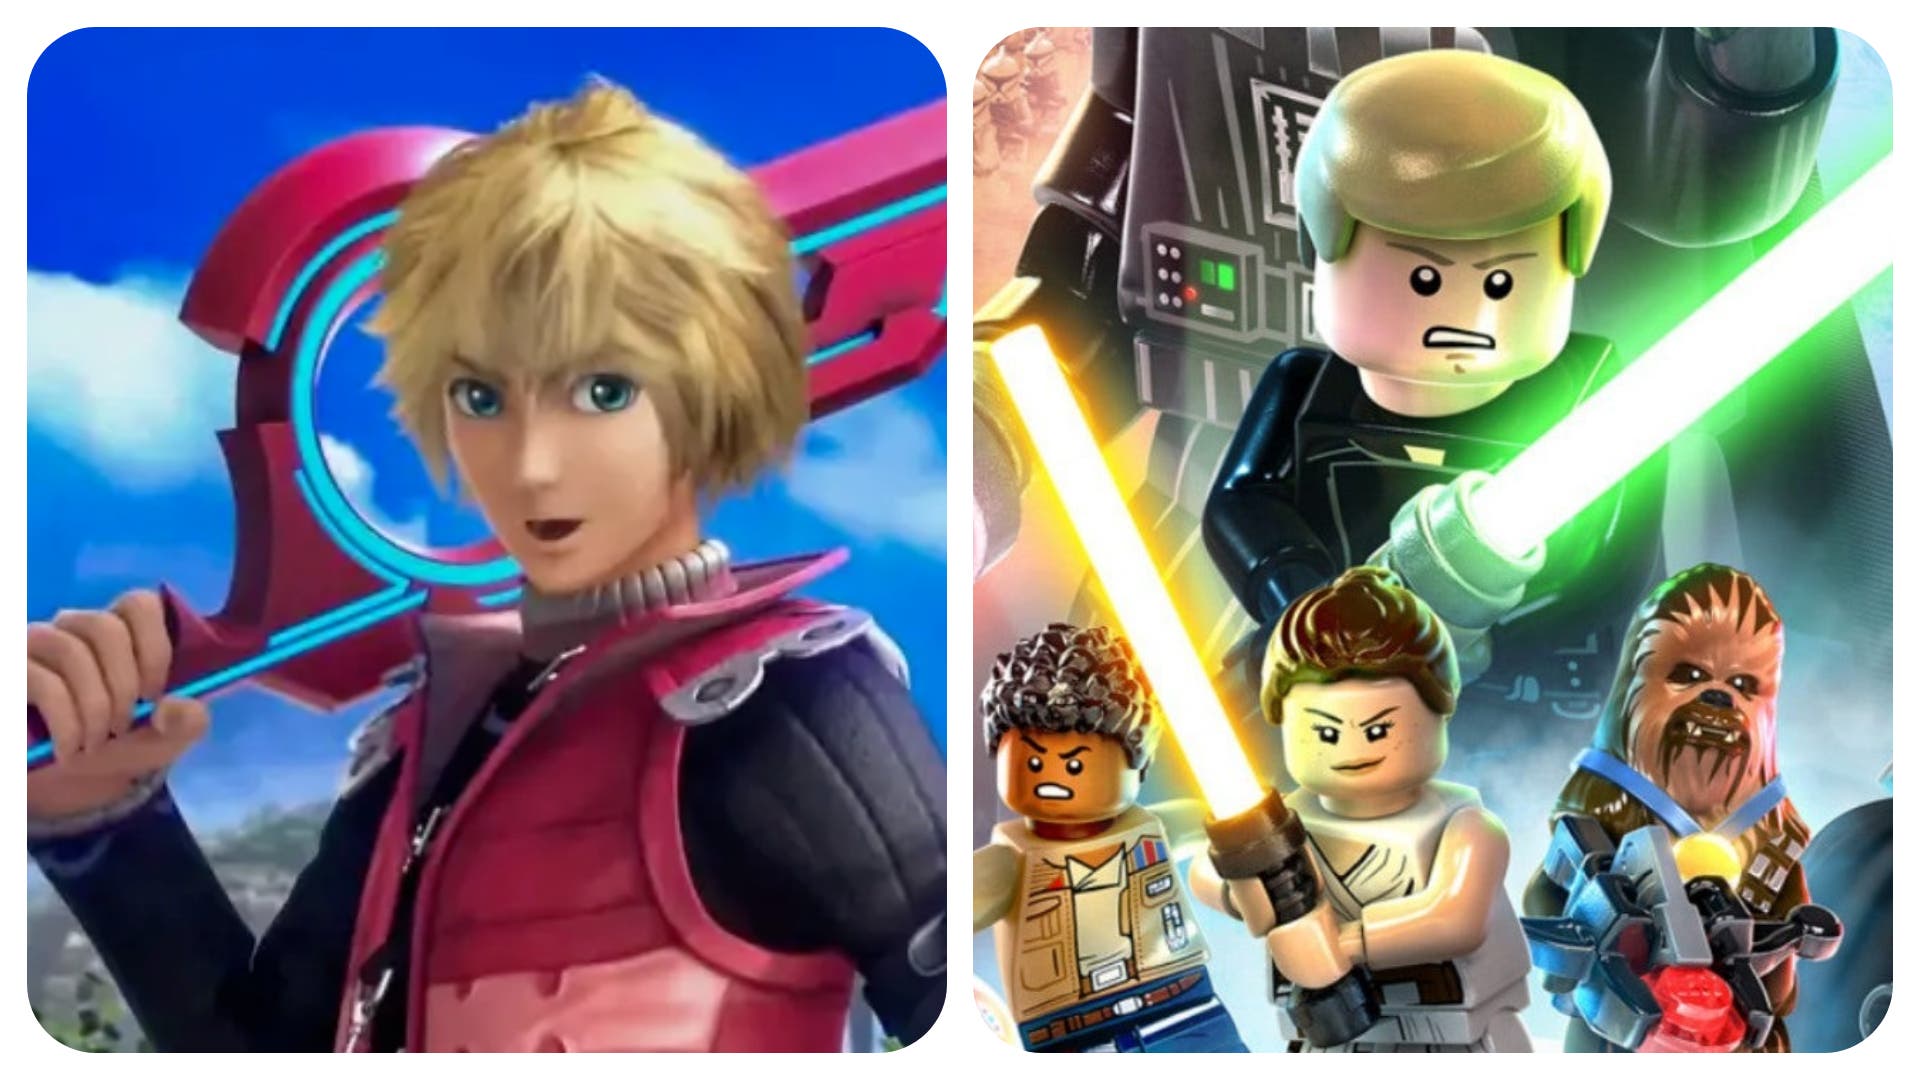 El nuevo juego de LEGO Star Wars contiene una curiosa referencia a Xenoblade Chronicles